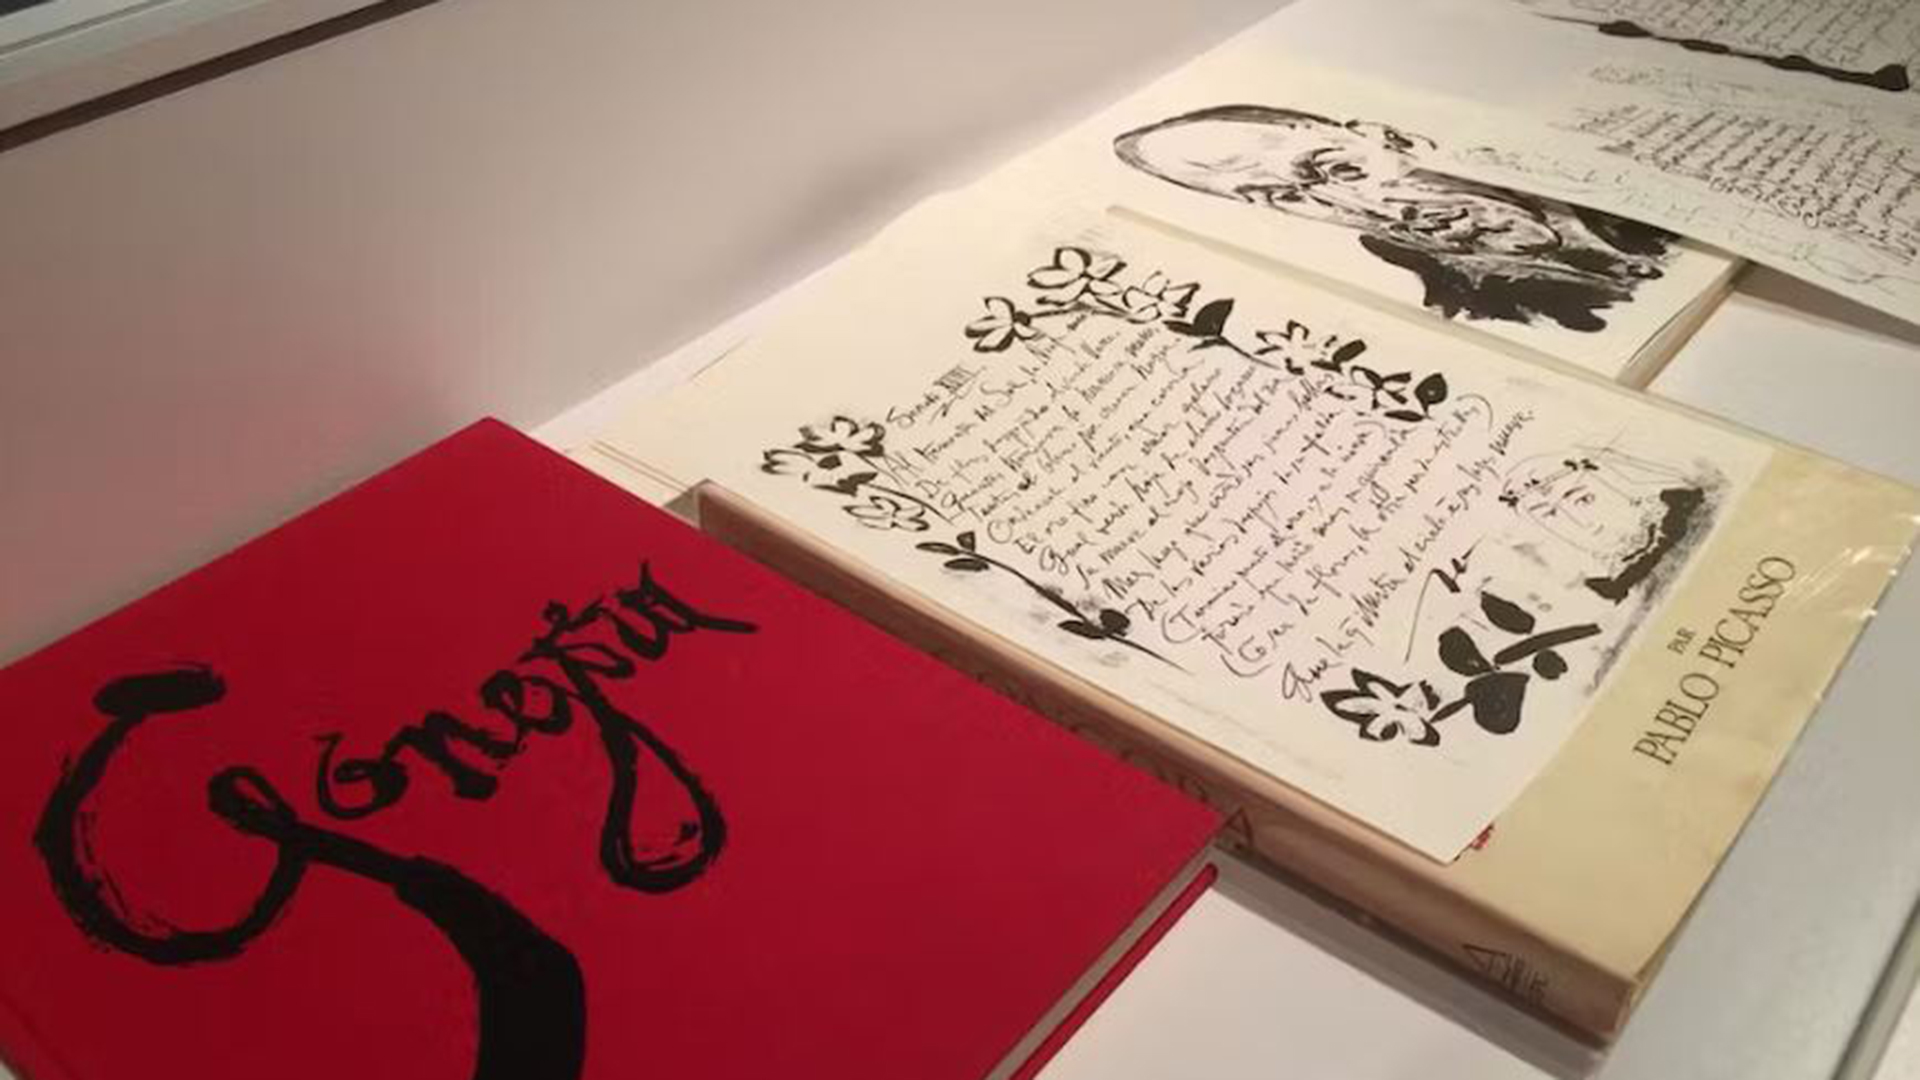 Objetos y poemas de Picasso recopilados para la exposición ‘Picasso escritor’ organizada por el Instituto Cervantes de Tokio (Instituto Cervantes de Tokio)
